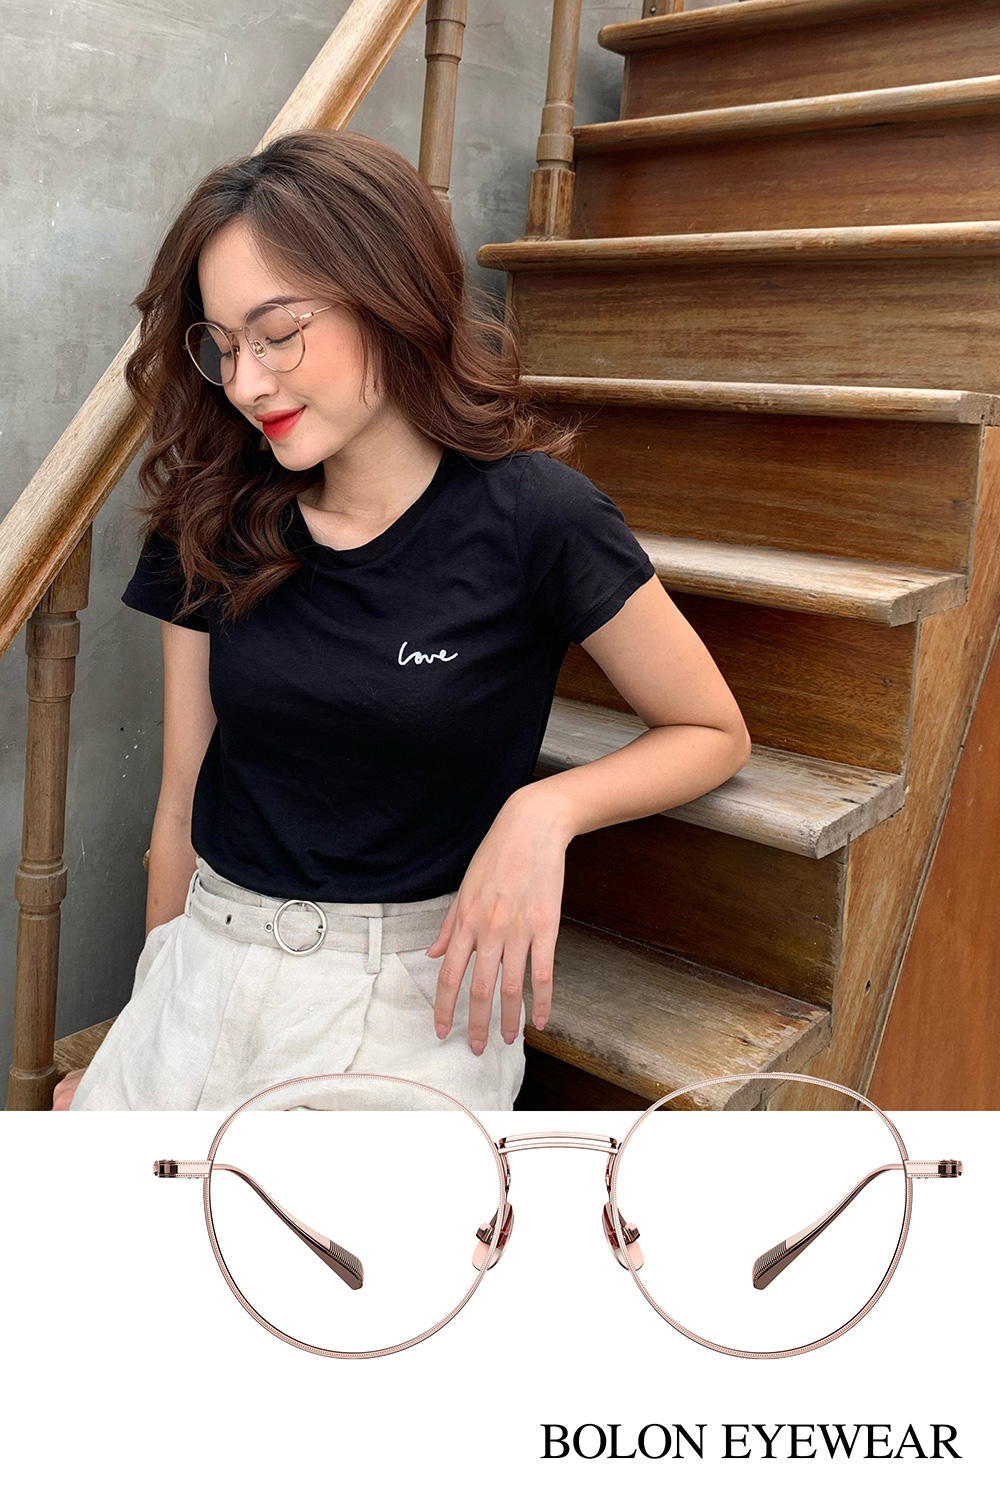 Xem cách fashionista Việt phối đồ kiệm màu thanh lịch cùng kính mắt - Ảnh 3.